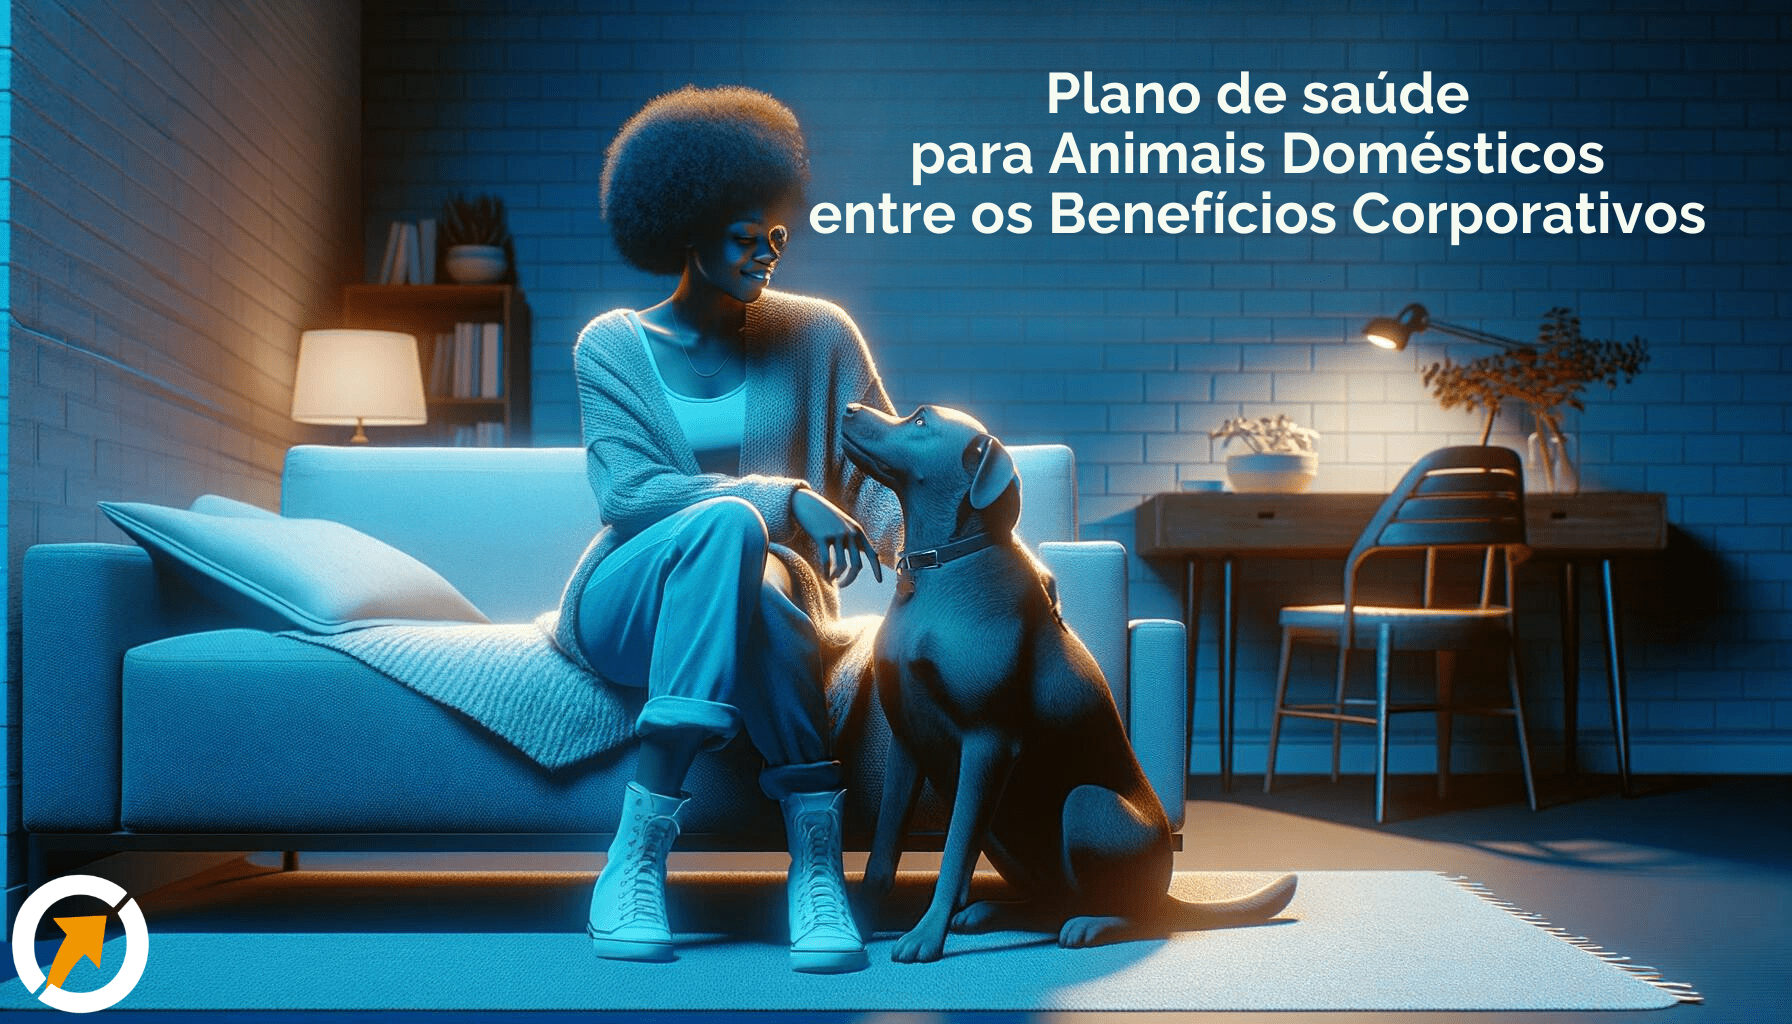 Uma mulher negra relaxa em casa com seu cachorro, em um ambiente amistoso com tons de azul, refletindo a importância do plano de saúde animal nos benefícios trabalhistas.